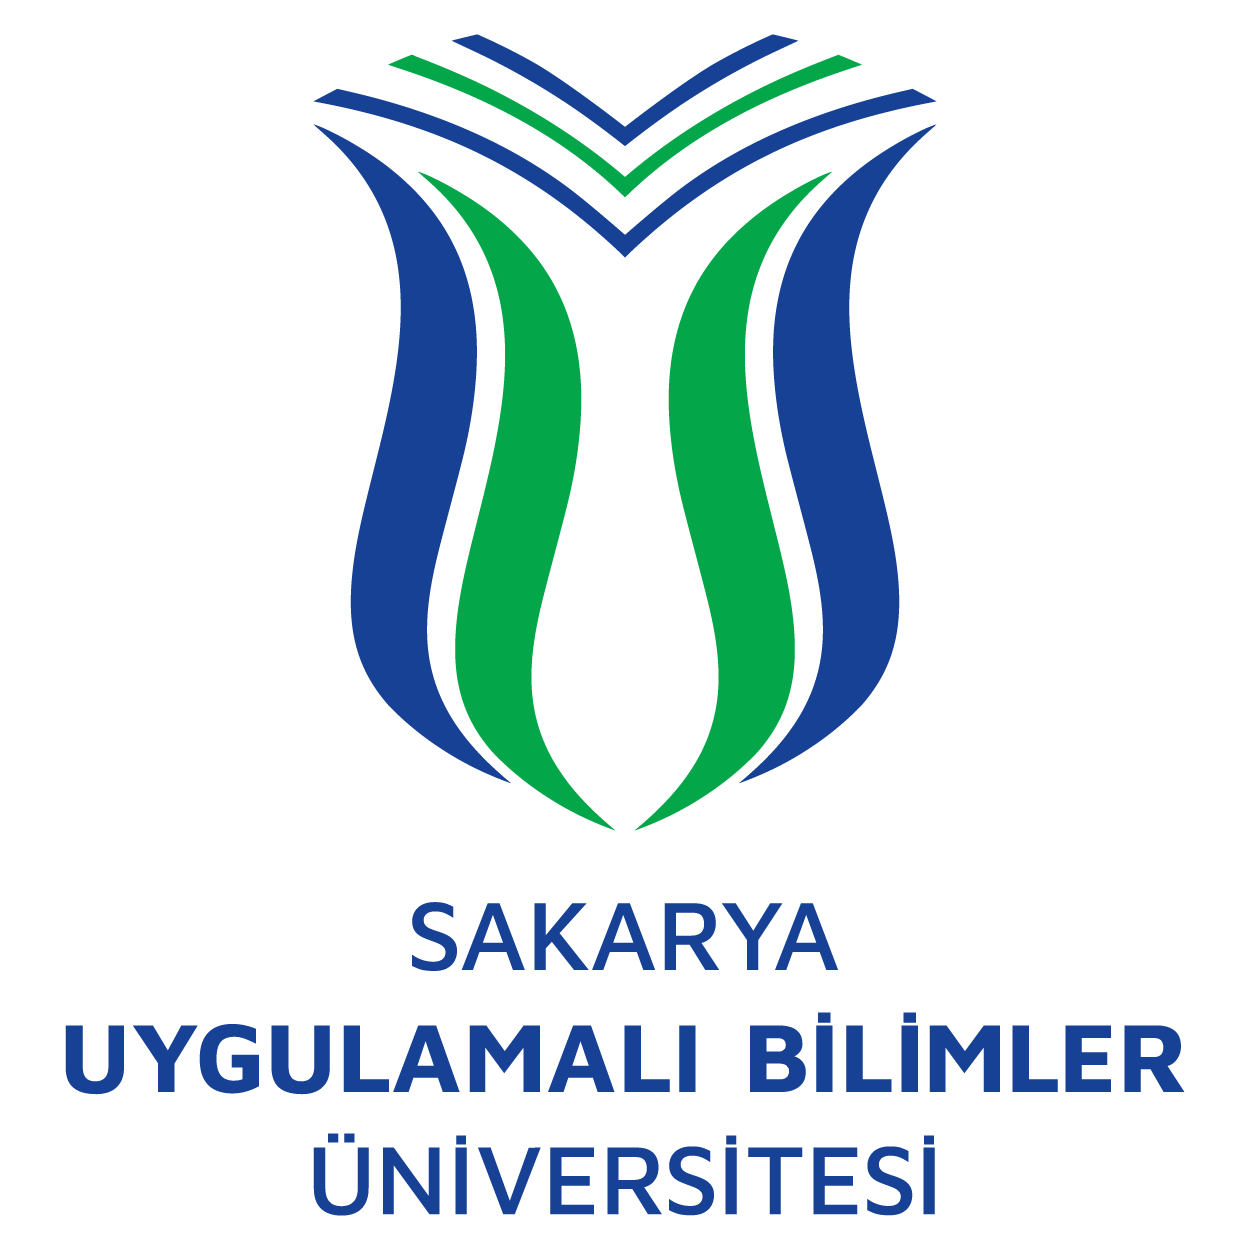 Sakarya Uygulamalı Bilimler Üniversitesi Logo png